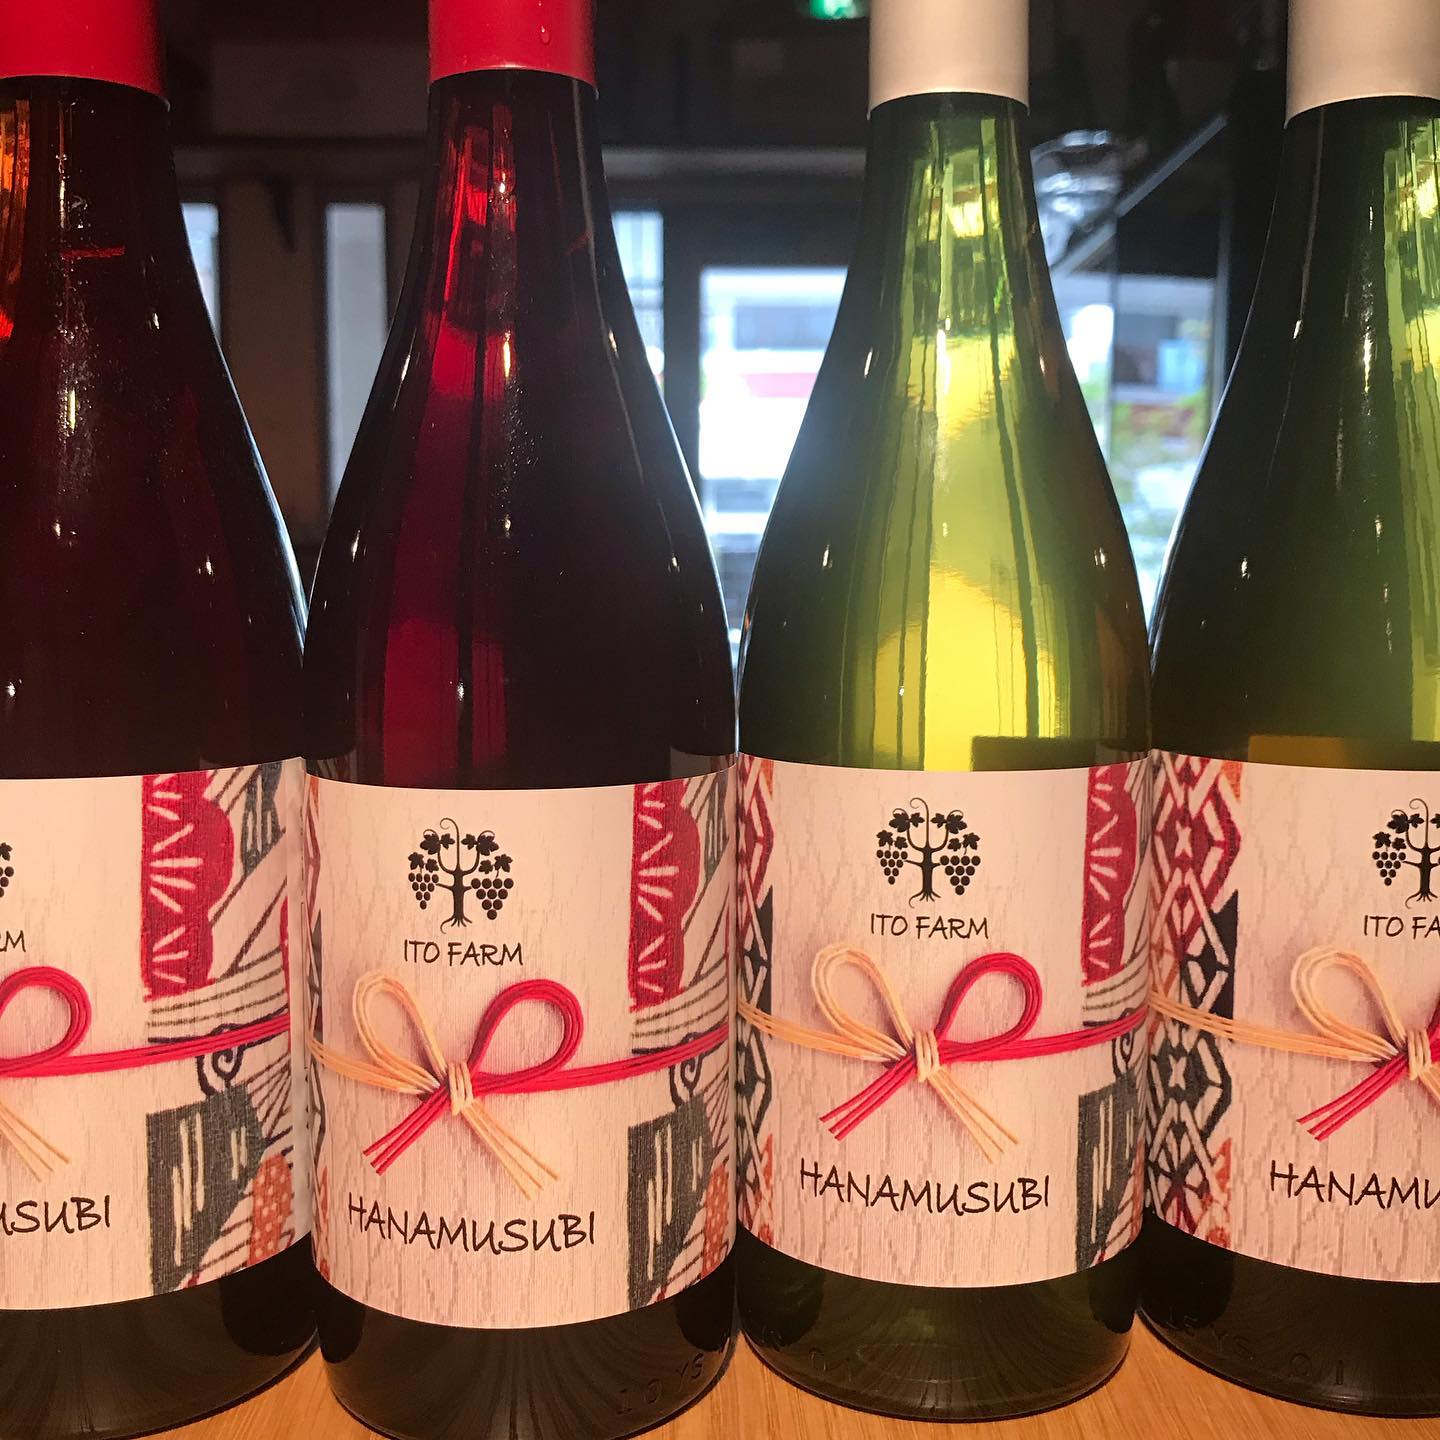 今日7/25も17時より通常通り営業してます。またまたウキウキする日本ワインが登場しました。伊藤農園(愛知)  HANAMUSUBI 愛知産の自社ブドウを野生酵母で醸した優しい味わいのワインに仕上がってます。今日は白ワインをグラスでお出ししてます。明日7/26は日曜日でお休みいただきます。#イルフェソワフ #ワイン#日本酒 #薬院#警固